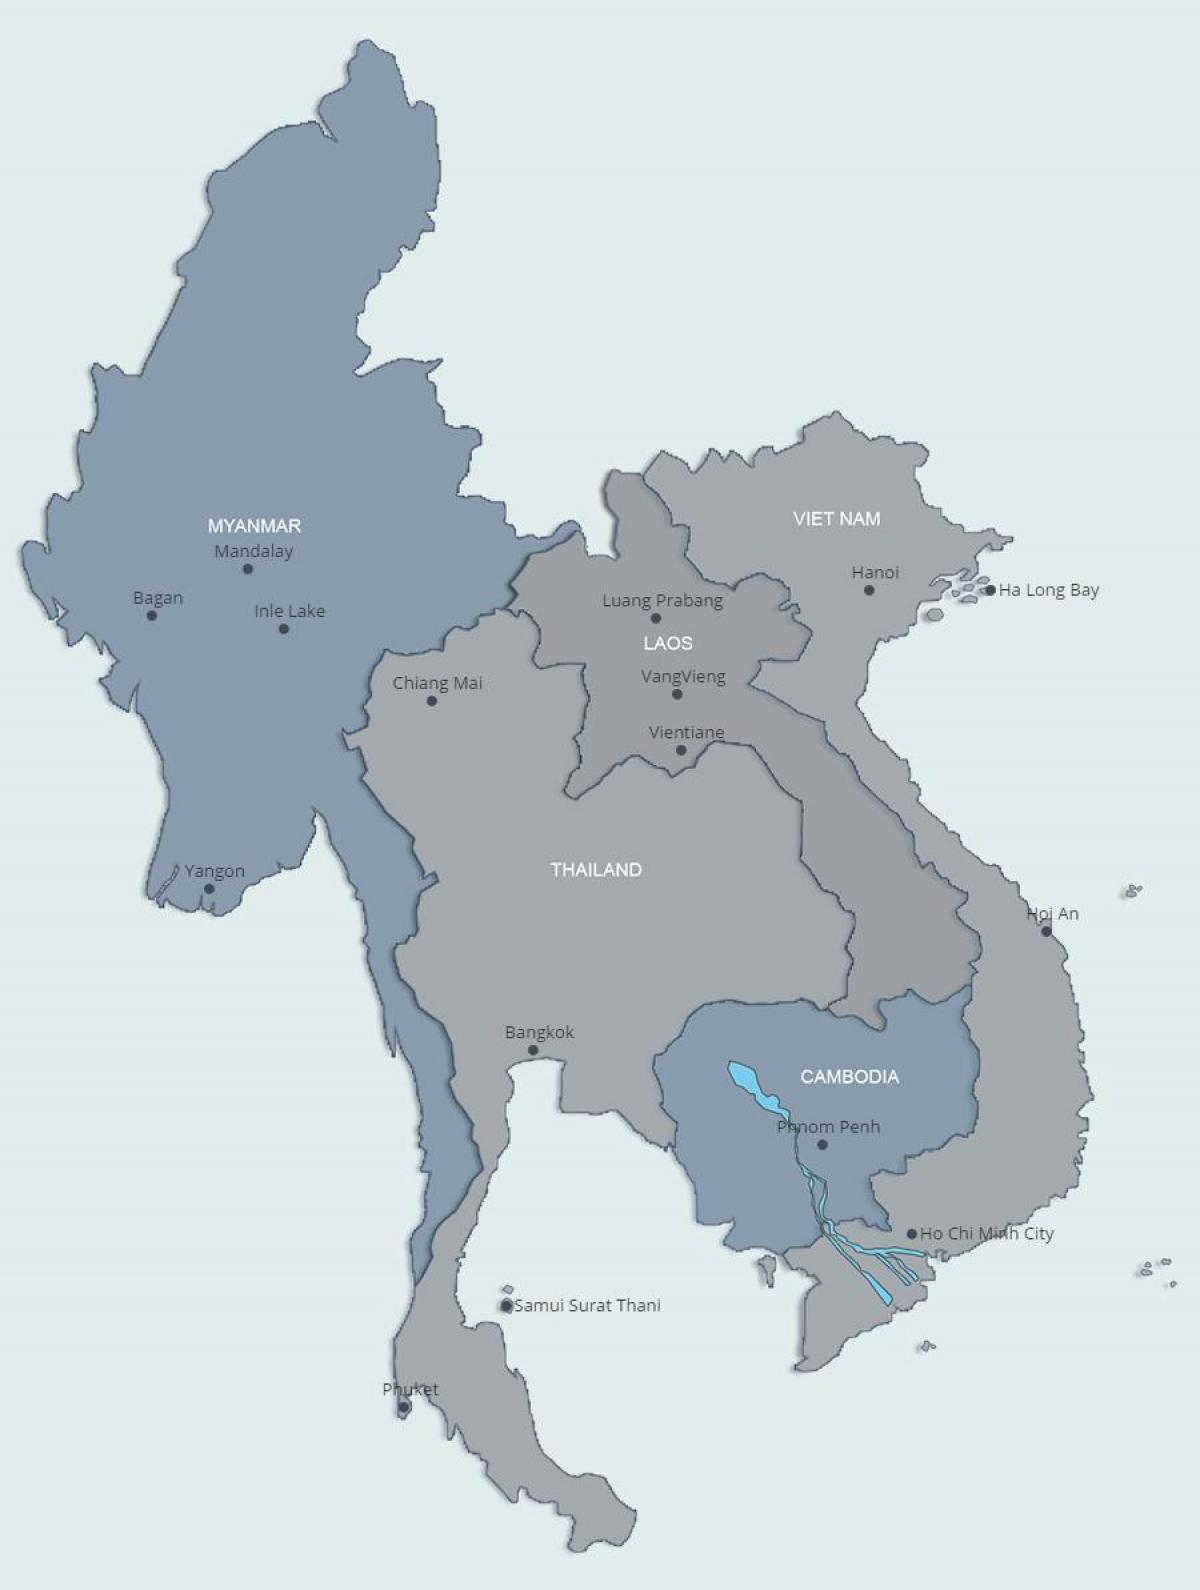 Kort over det nordlige laos